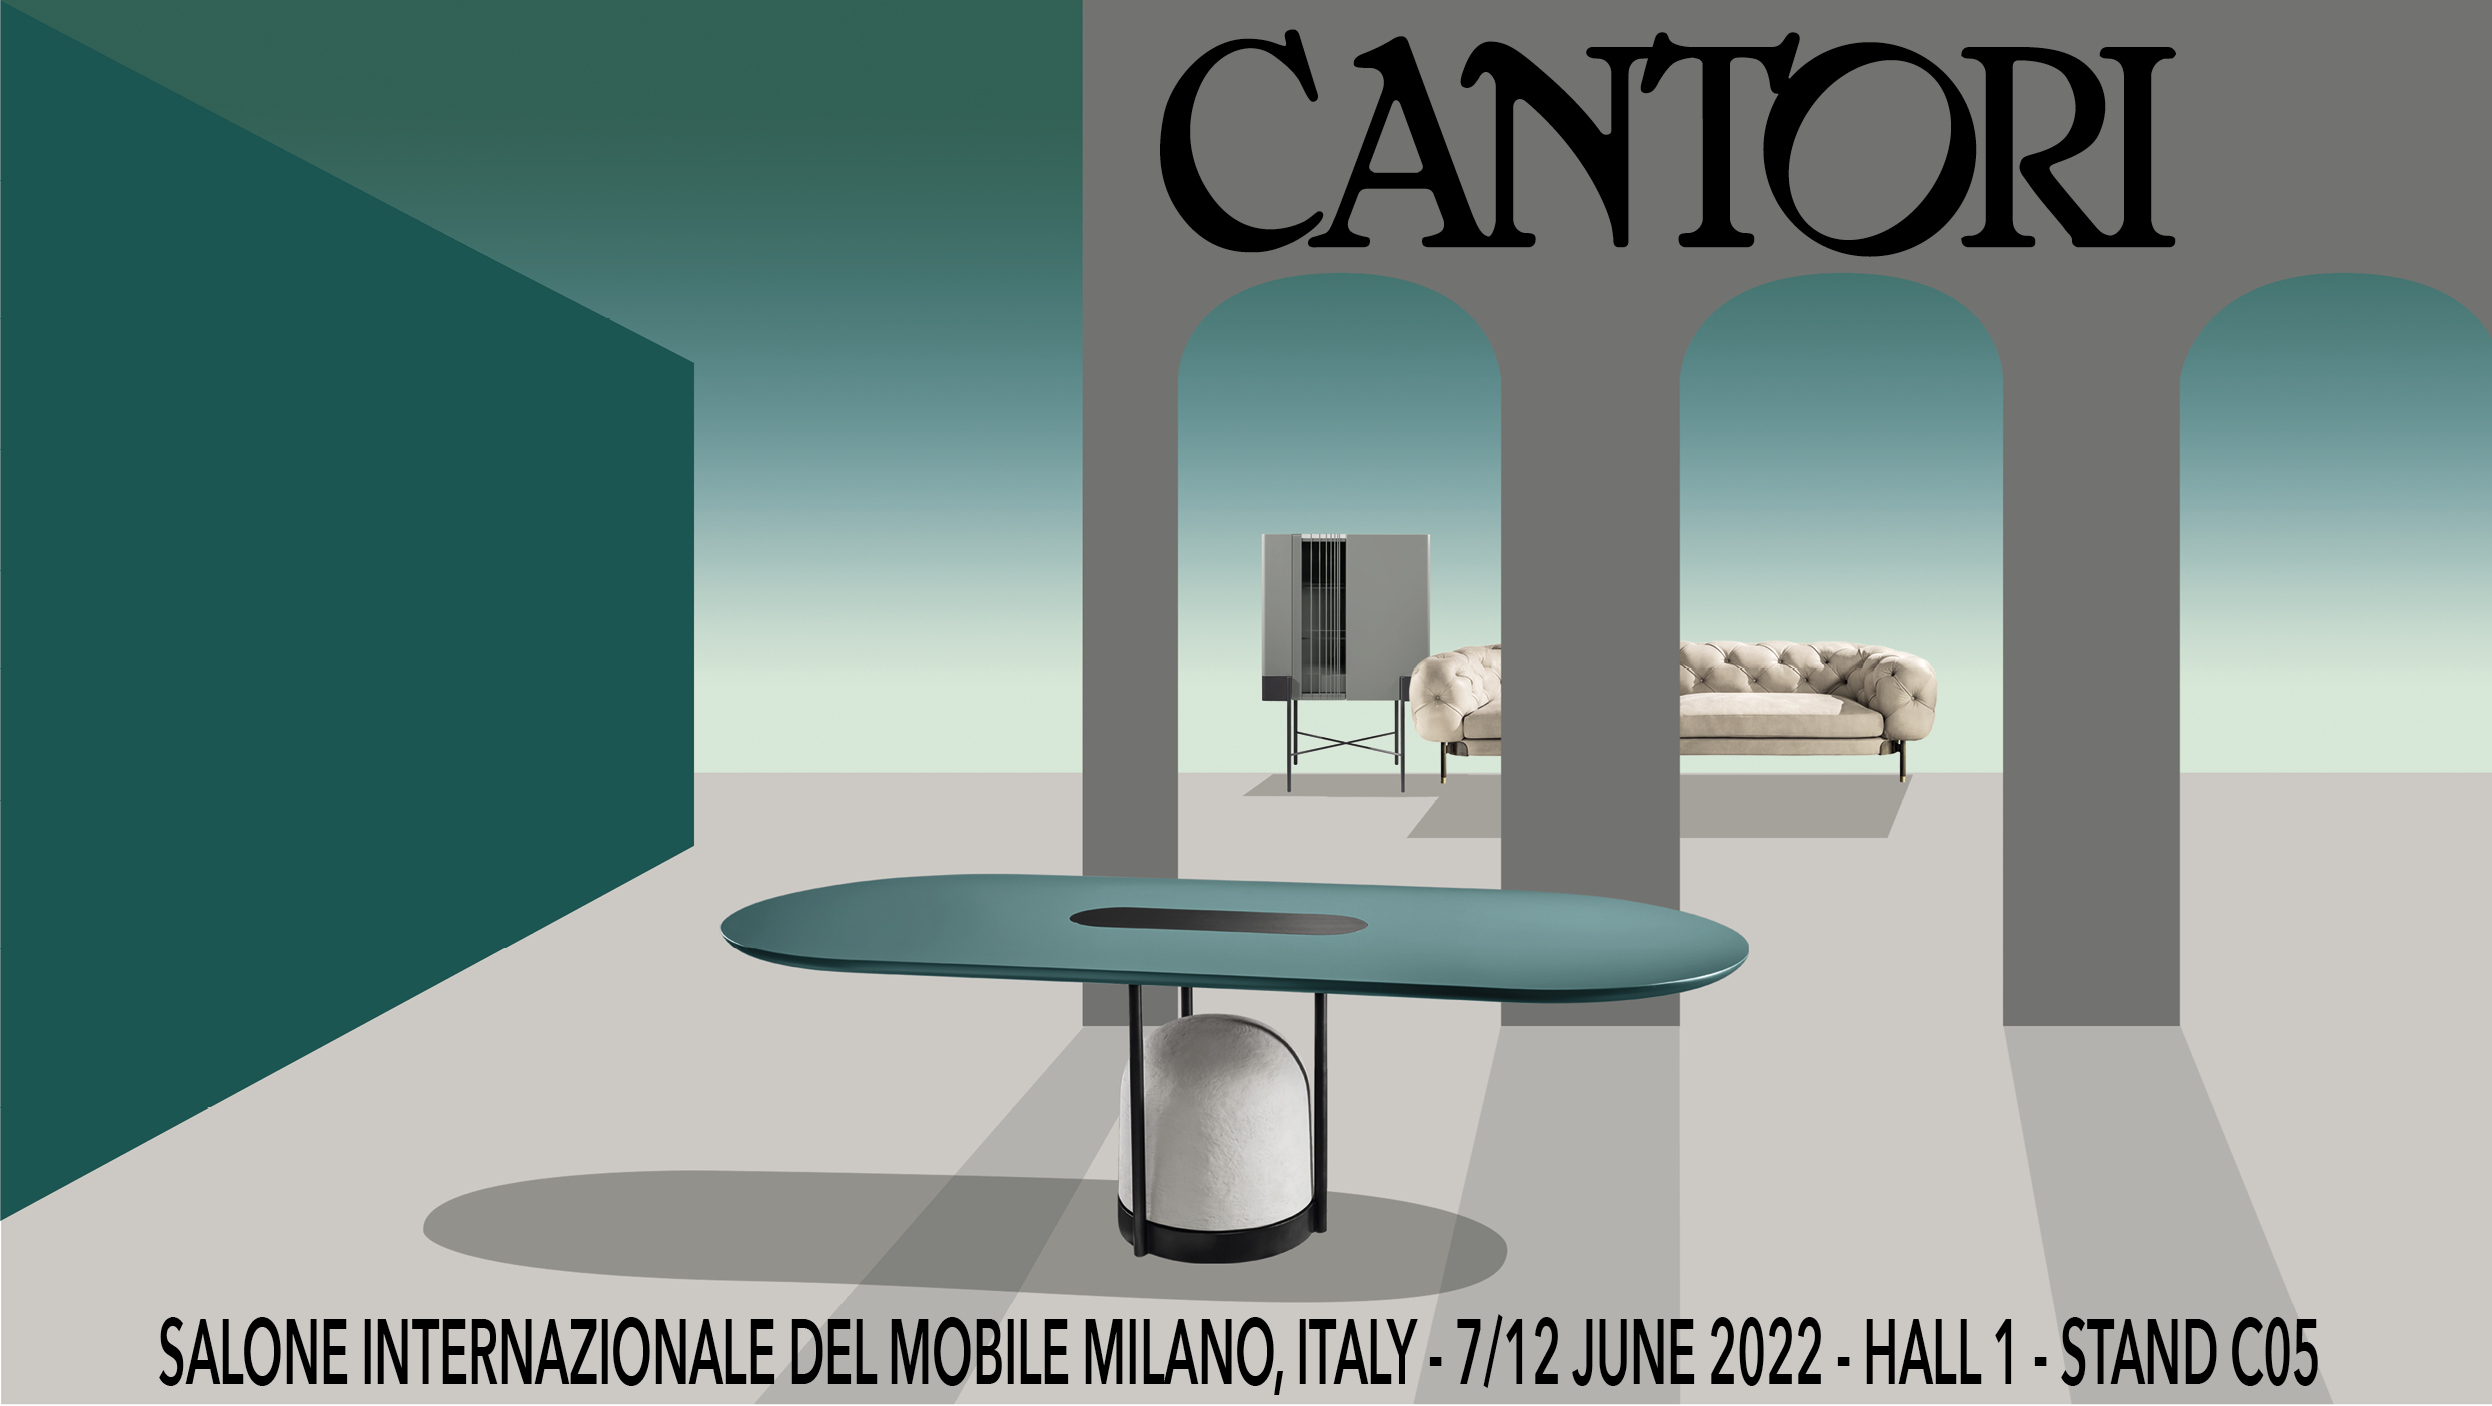  Cantori al Salone del Mobile di Milano 2022 - Cantori